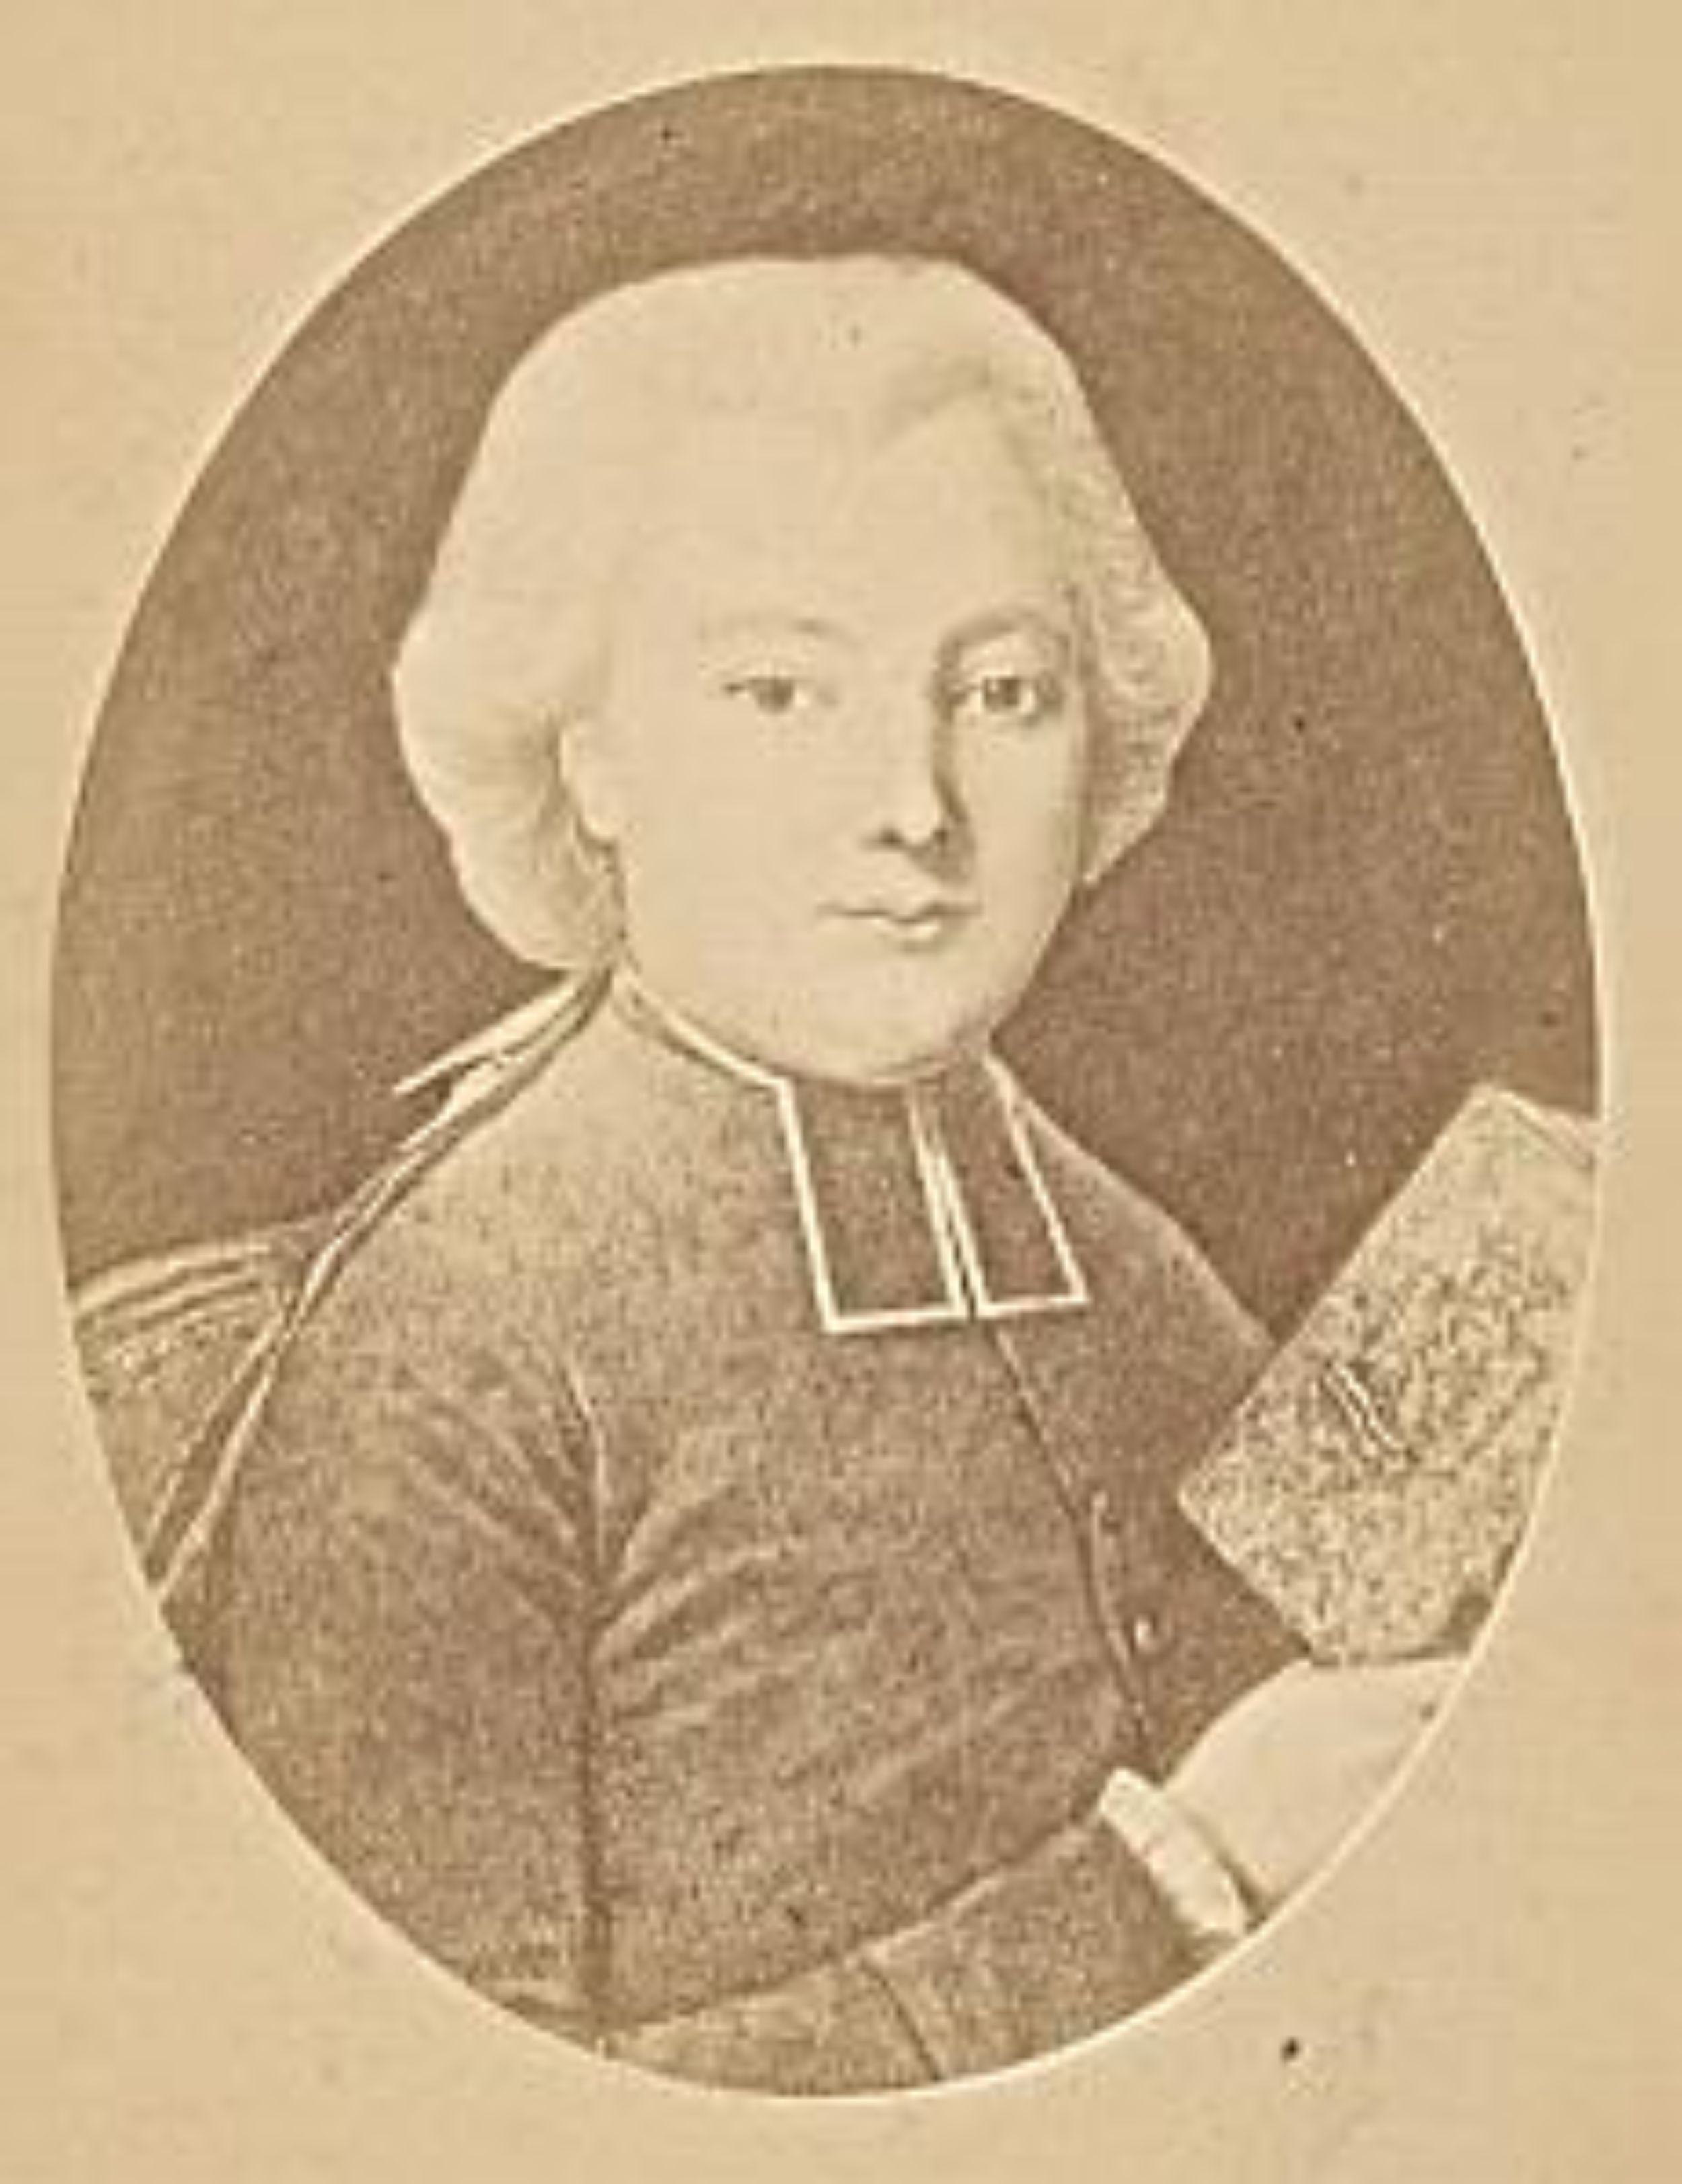  Biografía del Abab Grandidier  (1752-1787)